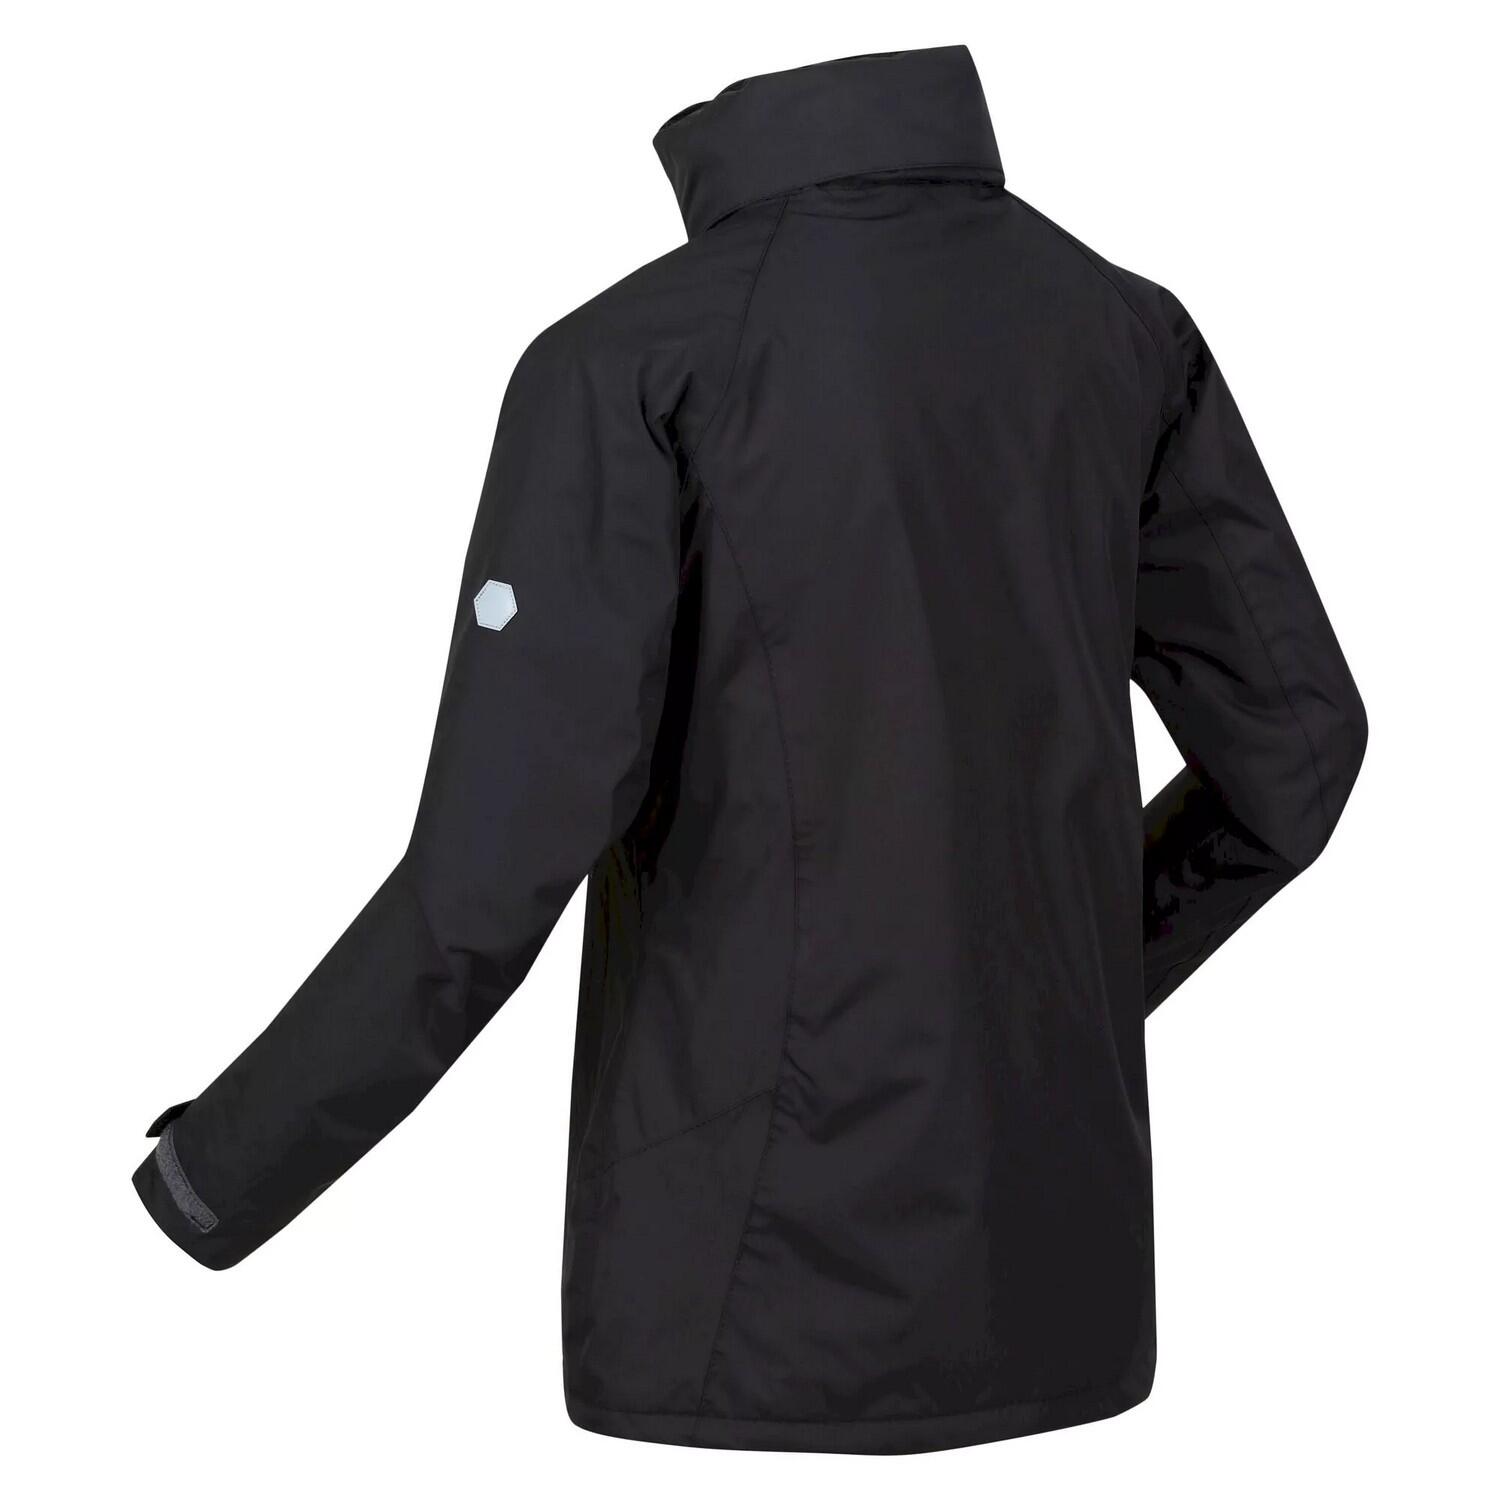 Womens/Ladies Calderdale Winter Waterproof Jacket (Black) 4/5